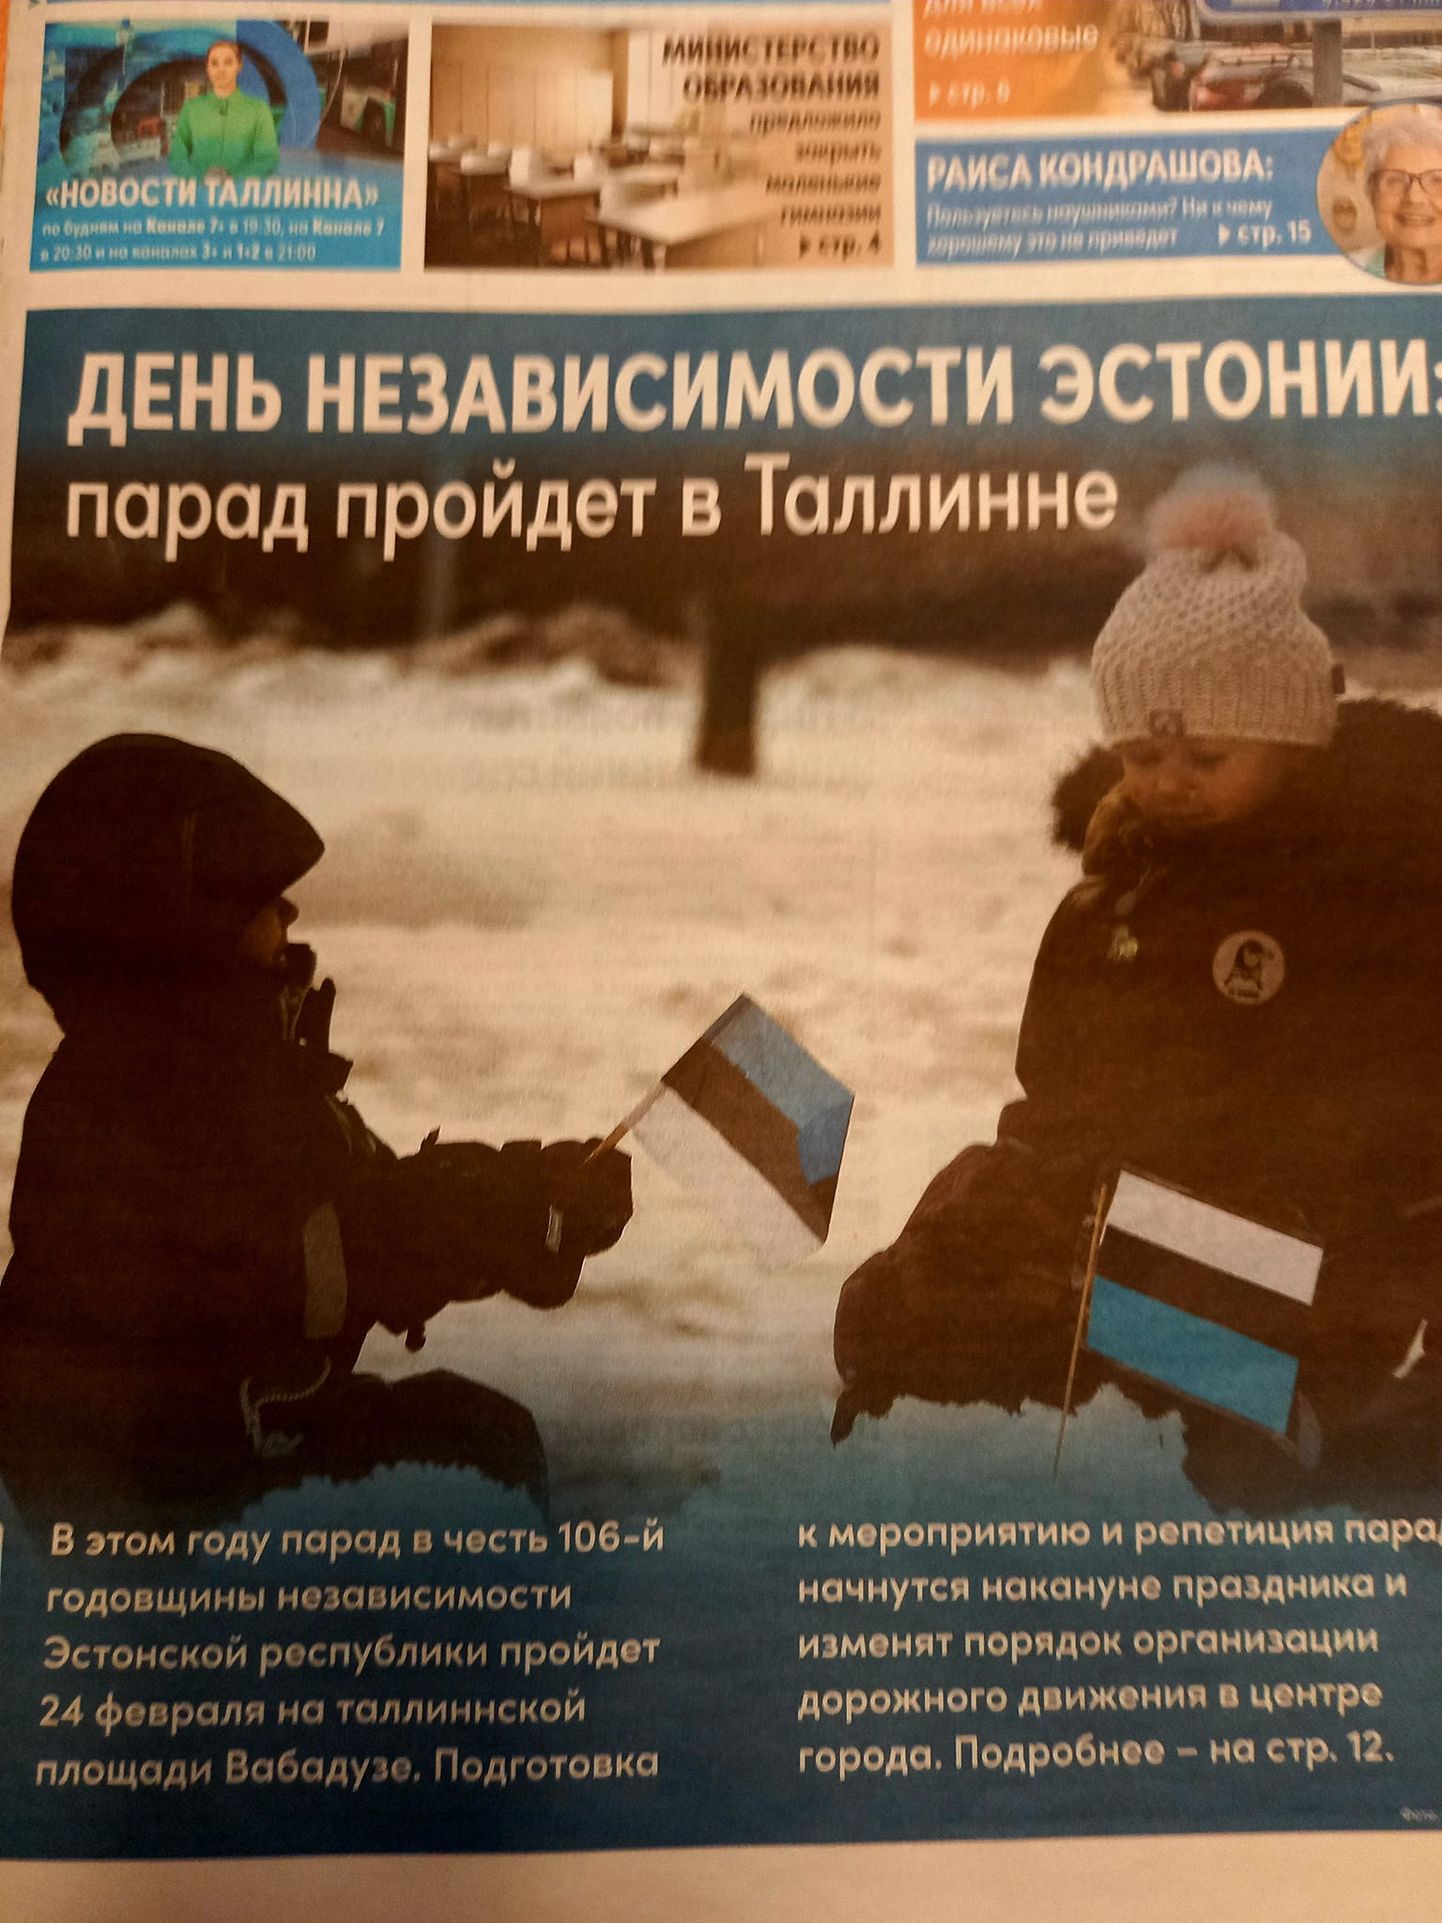 Обложка муниципального издания с перевернутым флагом.